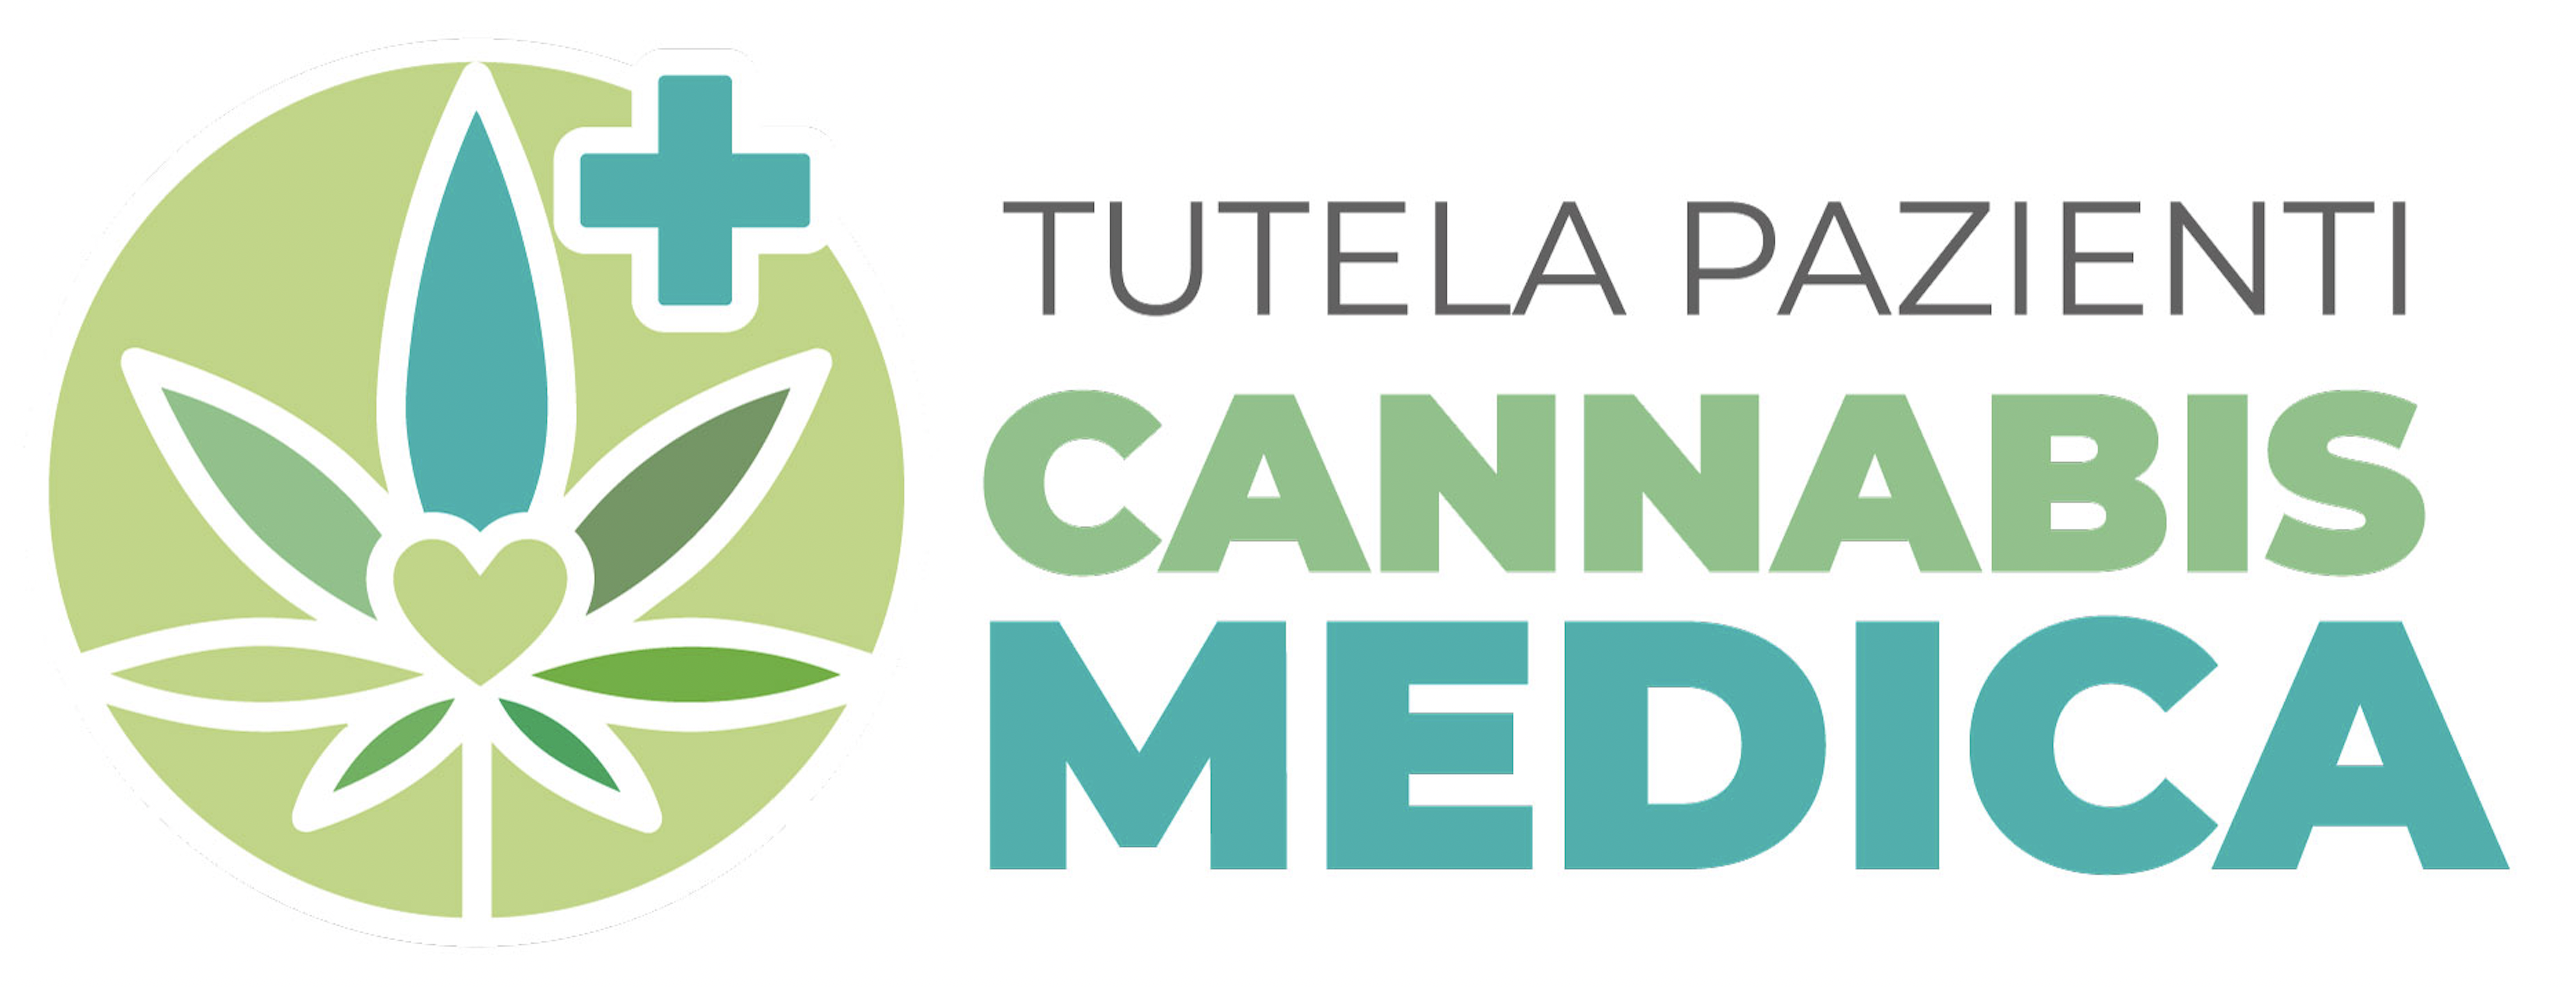 Tutela Pazienti Cannabis Medica E.T.S.